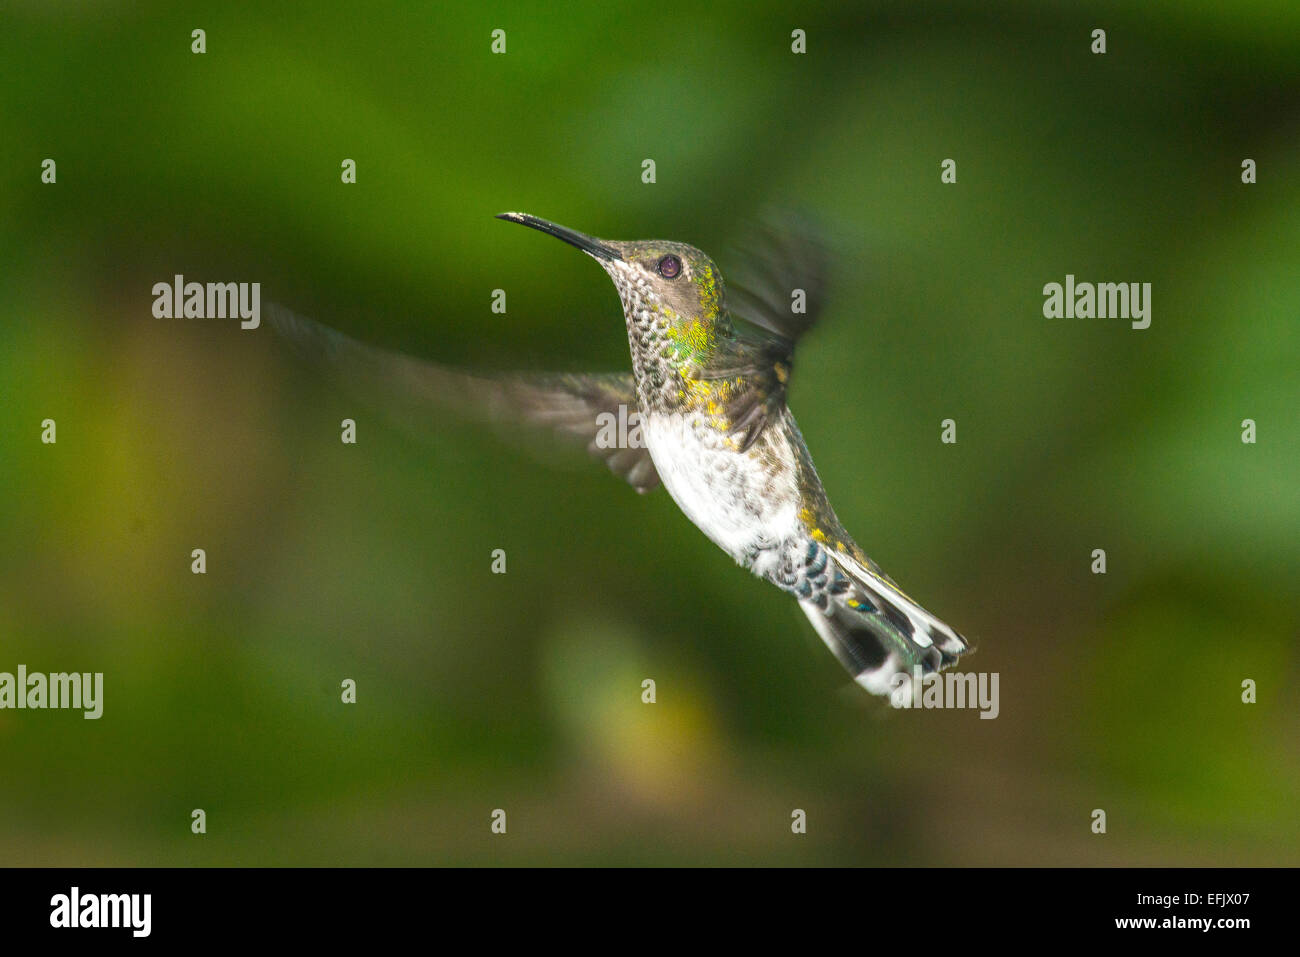 Piccoli fiori hummingbirdnear congelati in azione Foto Stock